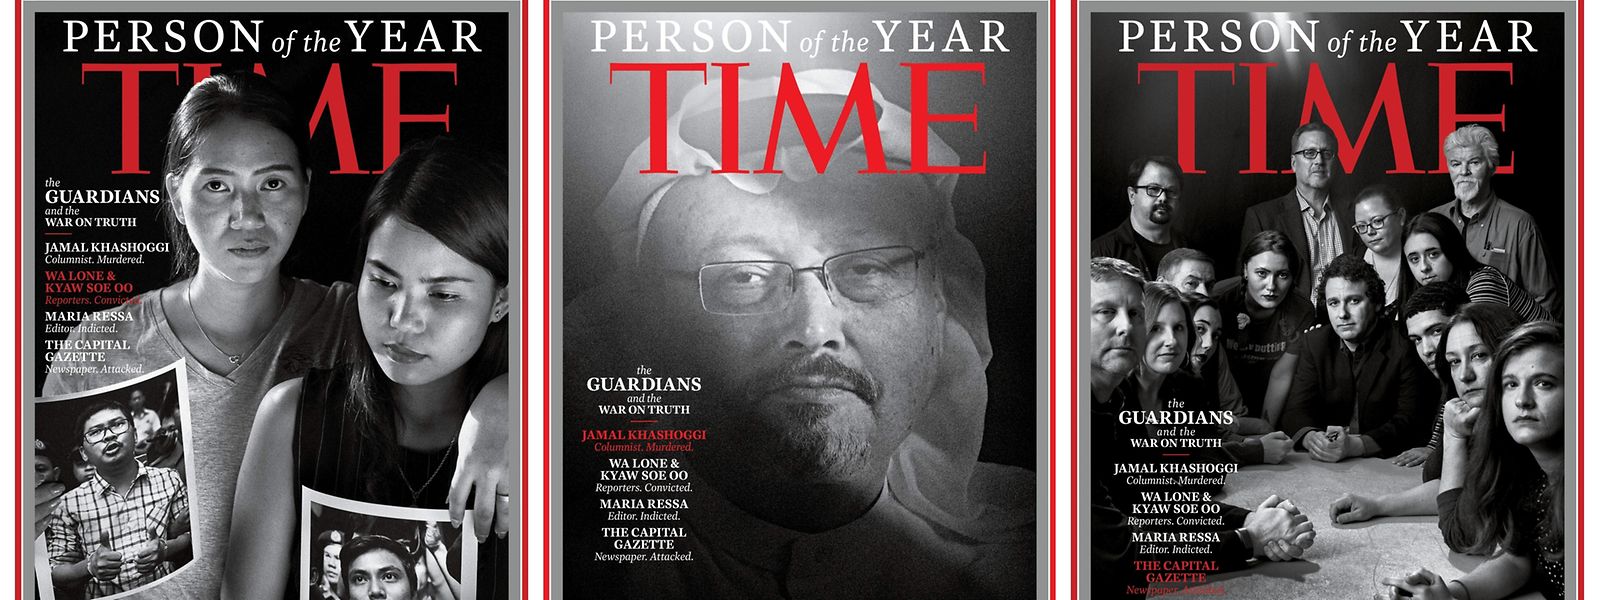 Legendärer Titel: Das "TIme Magazine" hat seine "Personen des Jahres" bekannt gegeben. Es sind durch die Bank Journalisten.